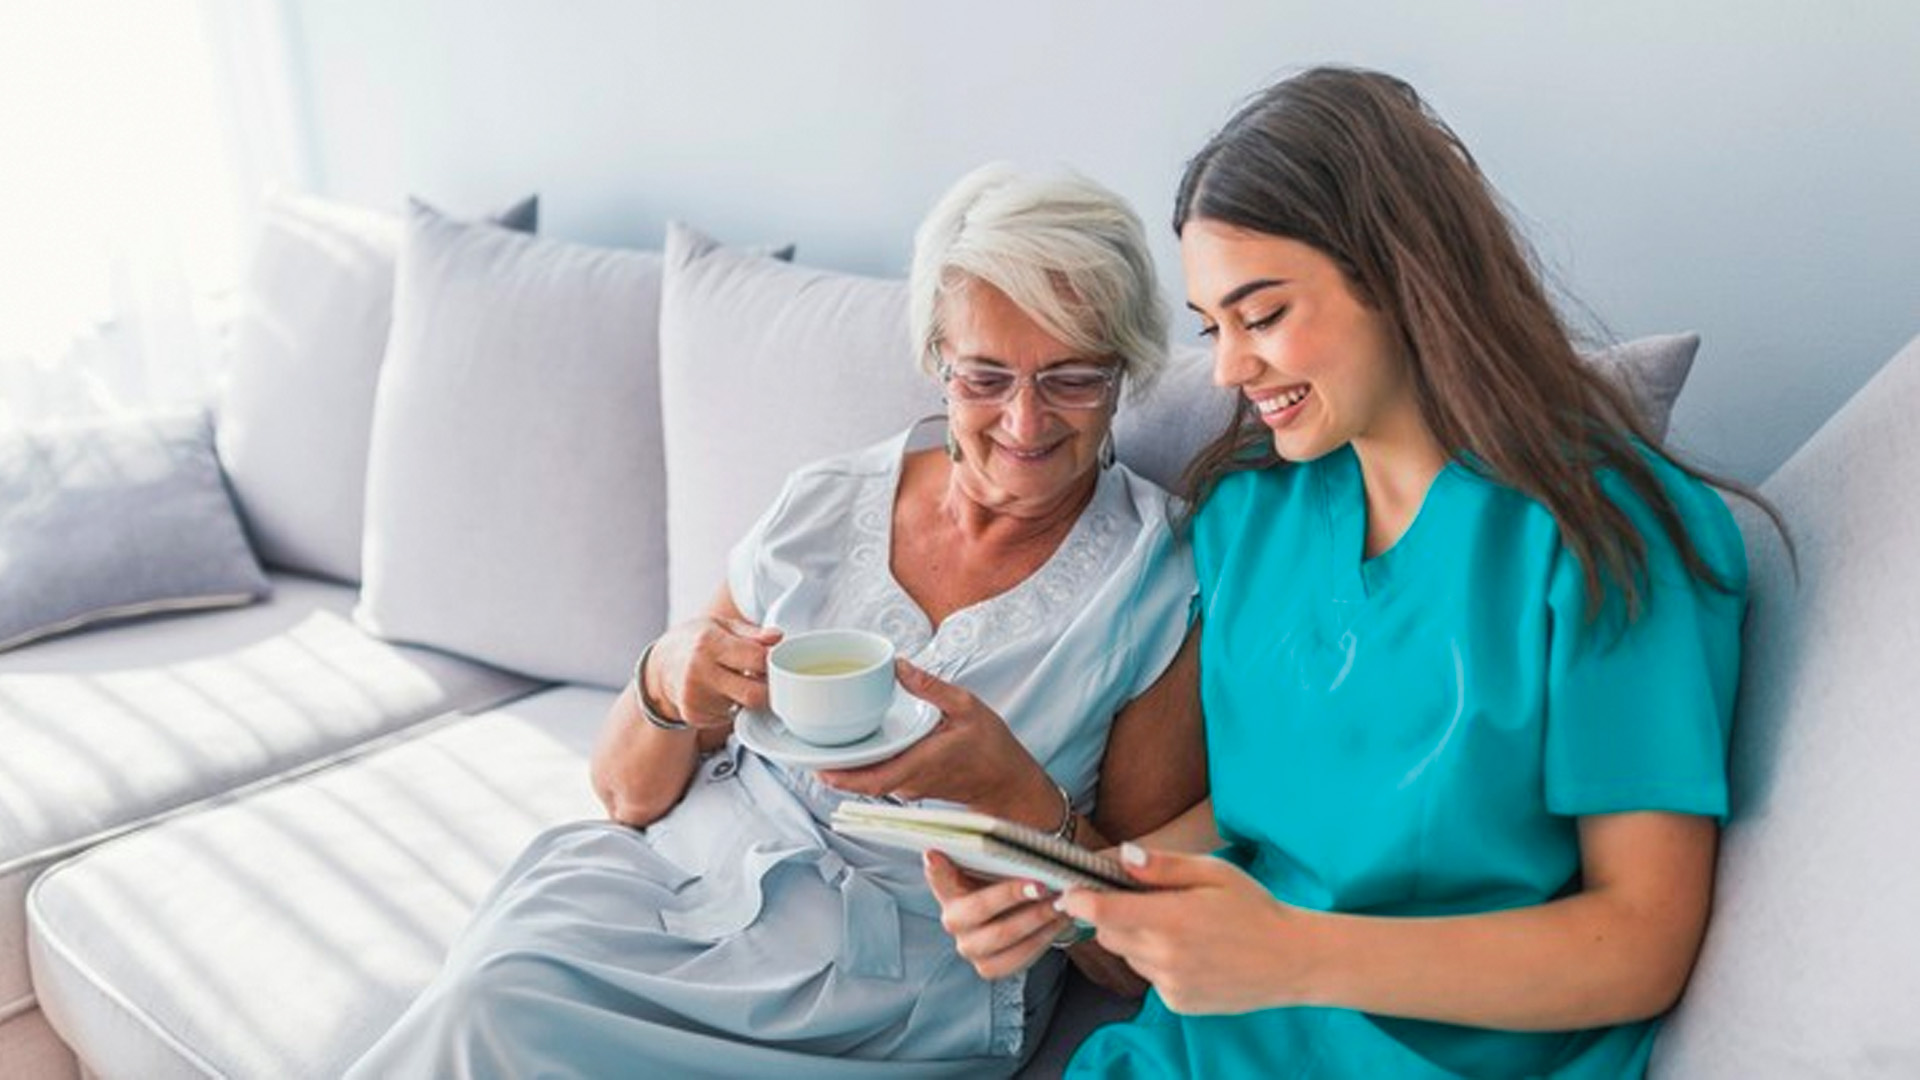 هزینه پرستار سالمند در منزل به صورت پاره وقت و تمام وقت چقدر است؟